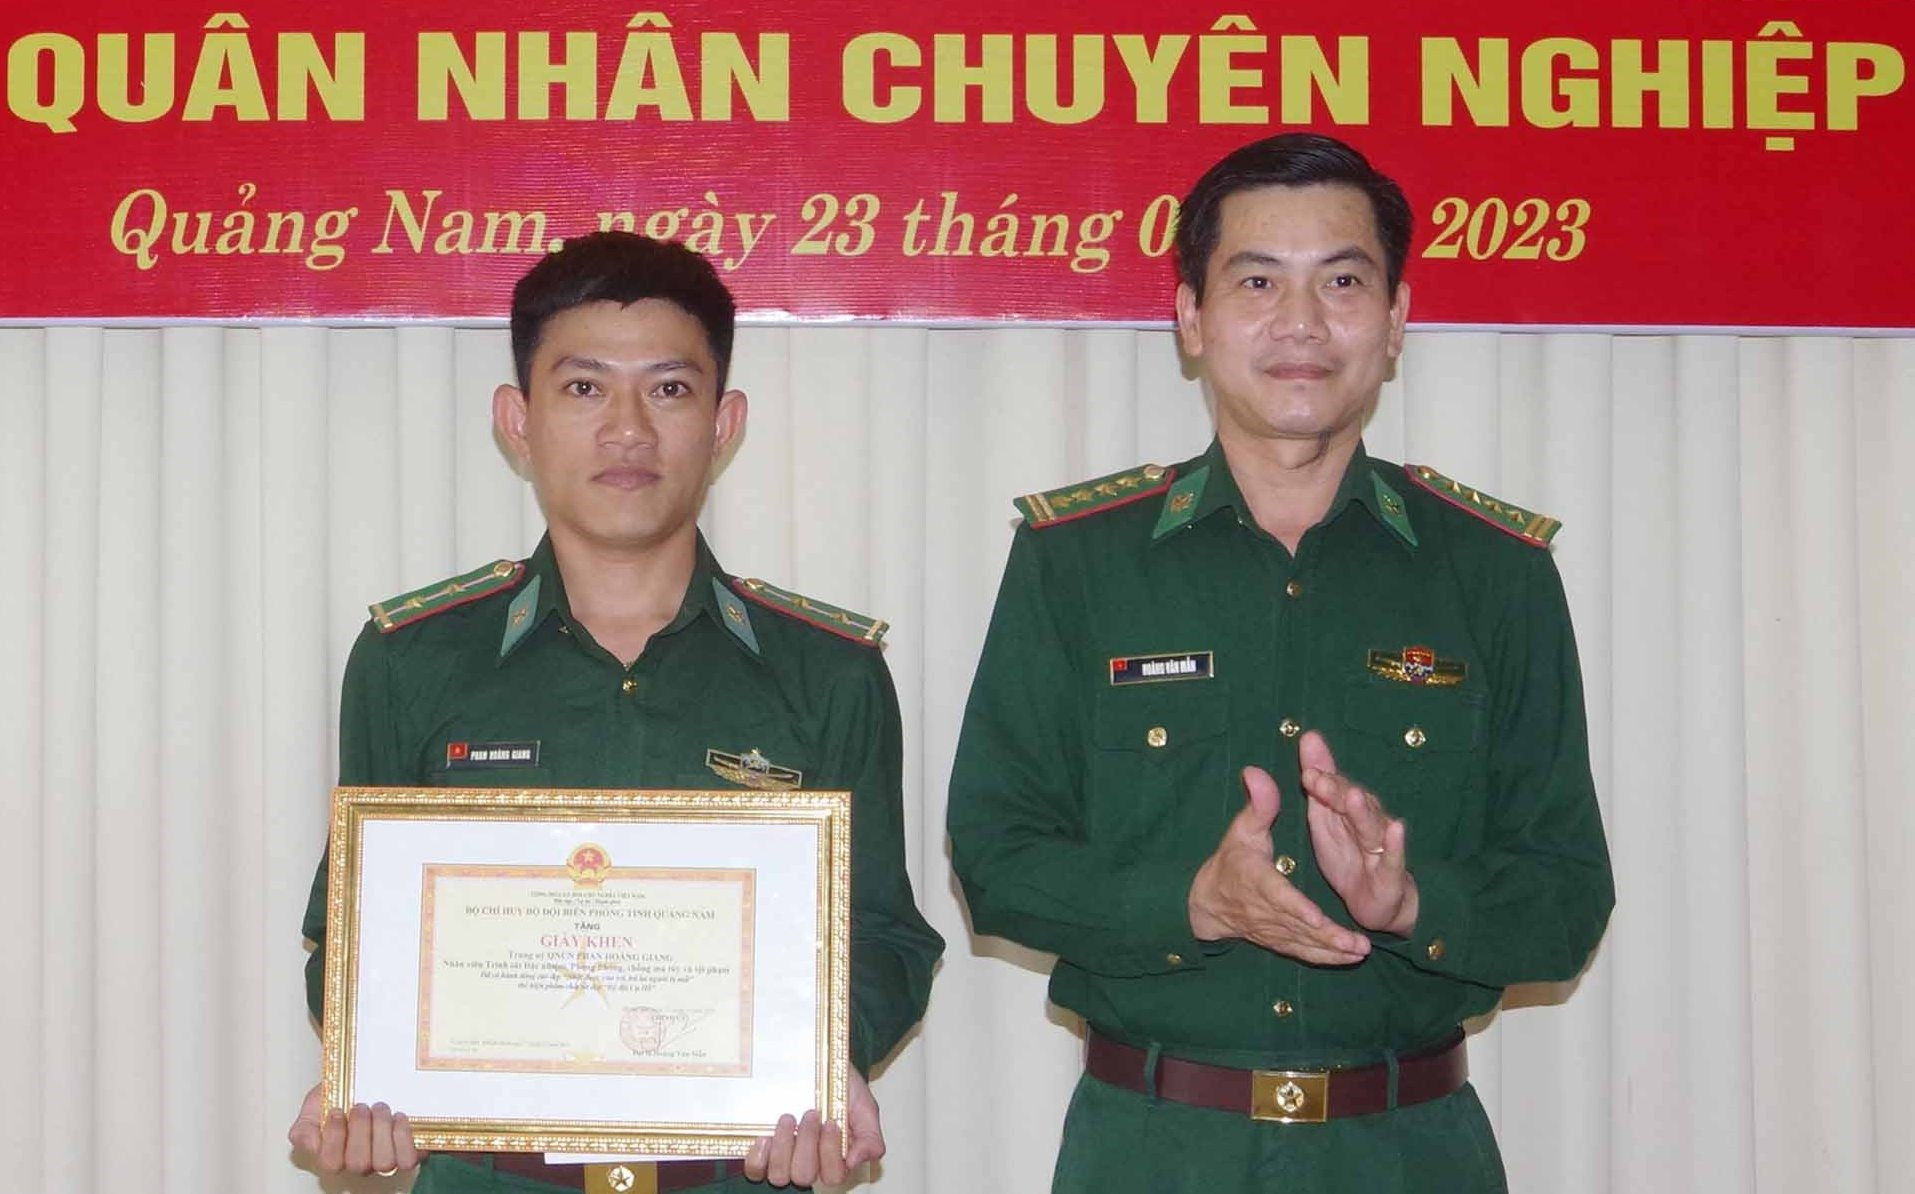 Đại tá Hoàng Văn Mẫn - Chính ủy BĐBP tỉnh trao giấy khen trung úy Phan Hoàng Giang. Ảnh: HỒNG ANH